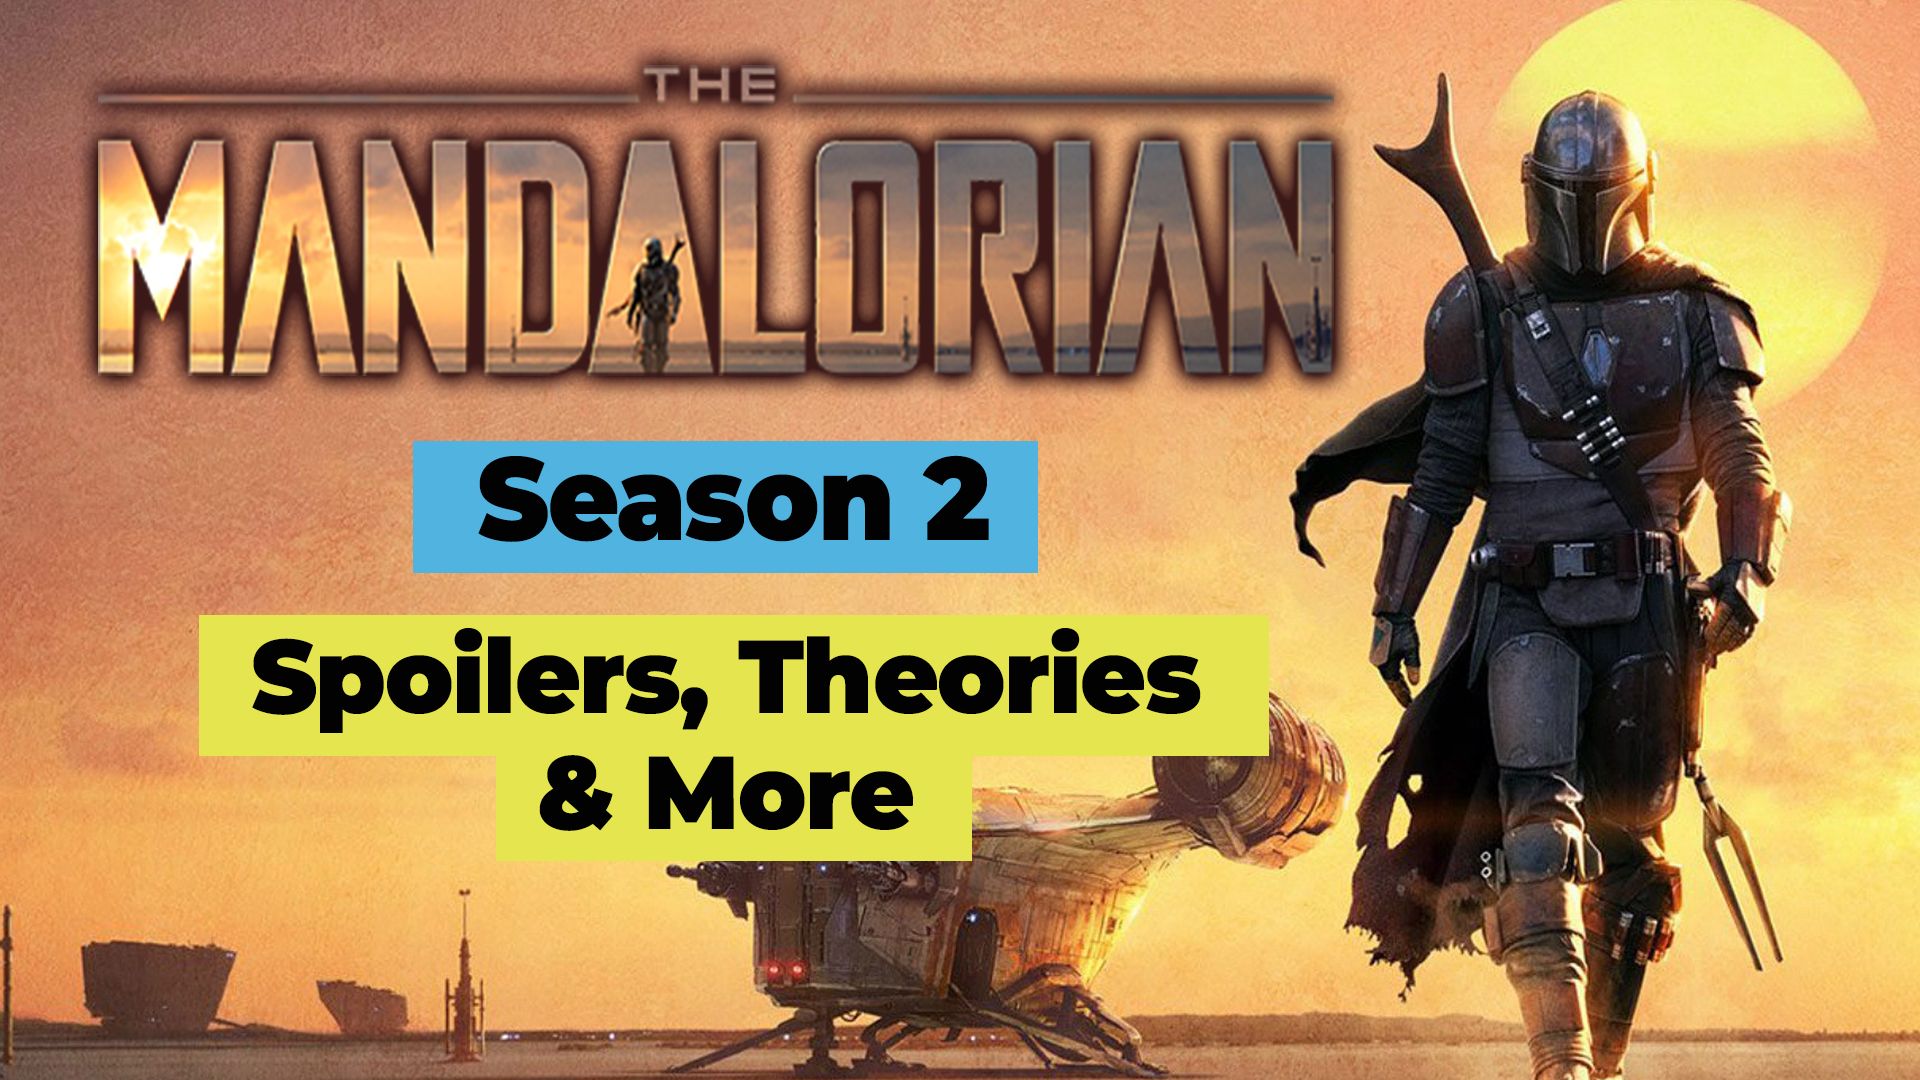 Mark Hamill calls The Mandalorian season 2 cameo the greatest gift